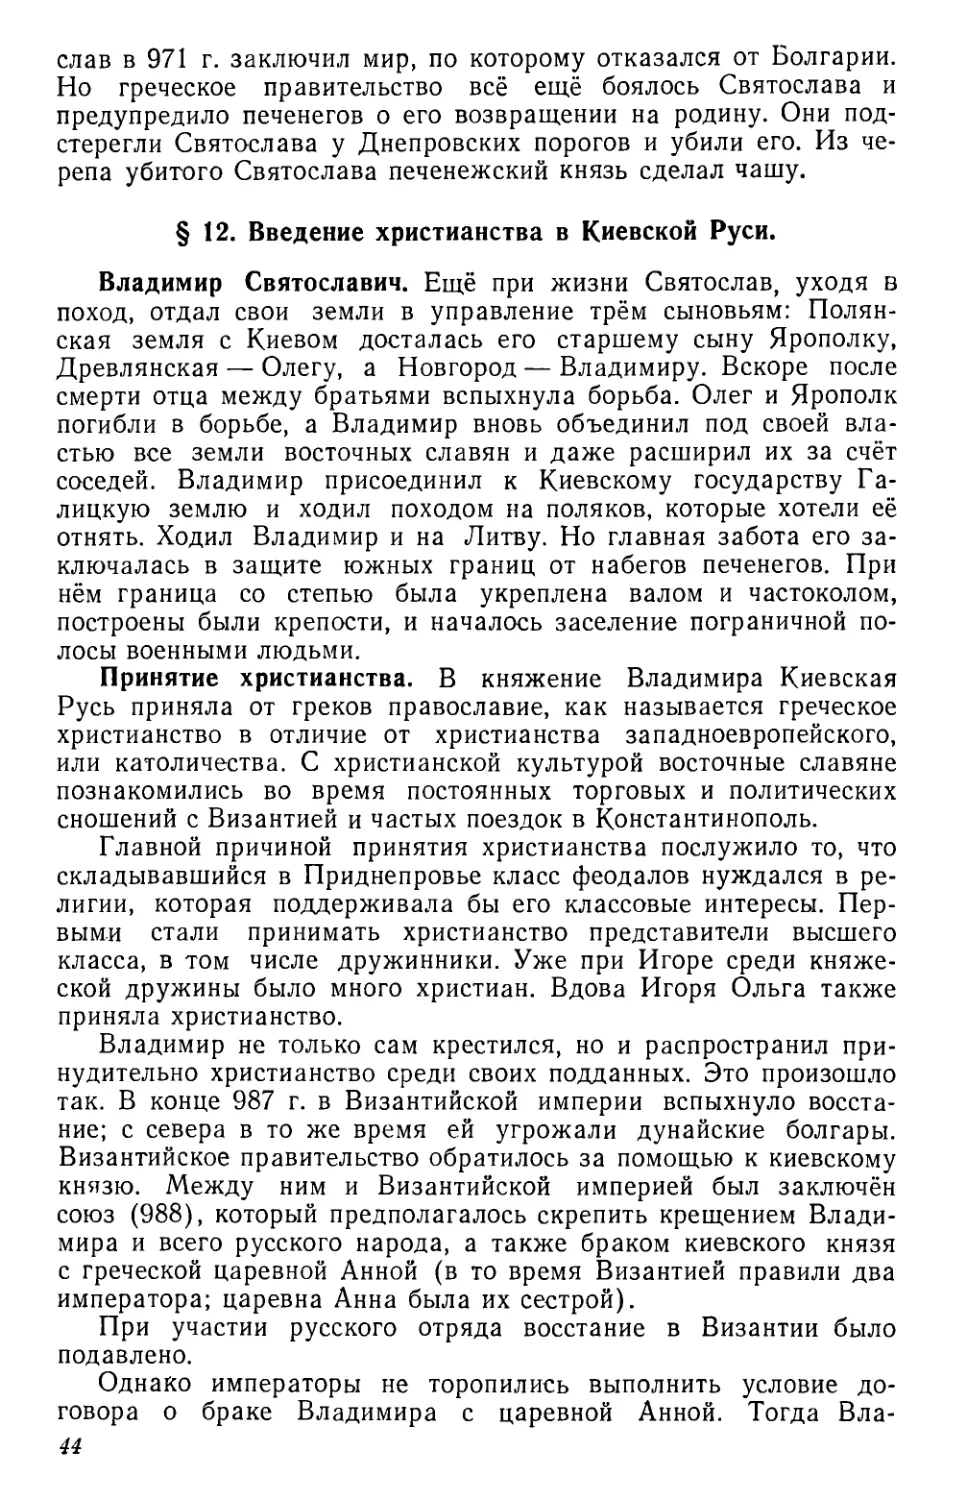 § 12. Введение христианства в Киевской Руси